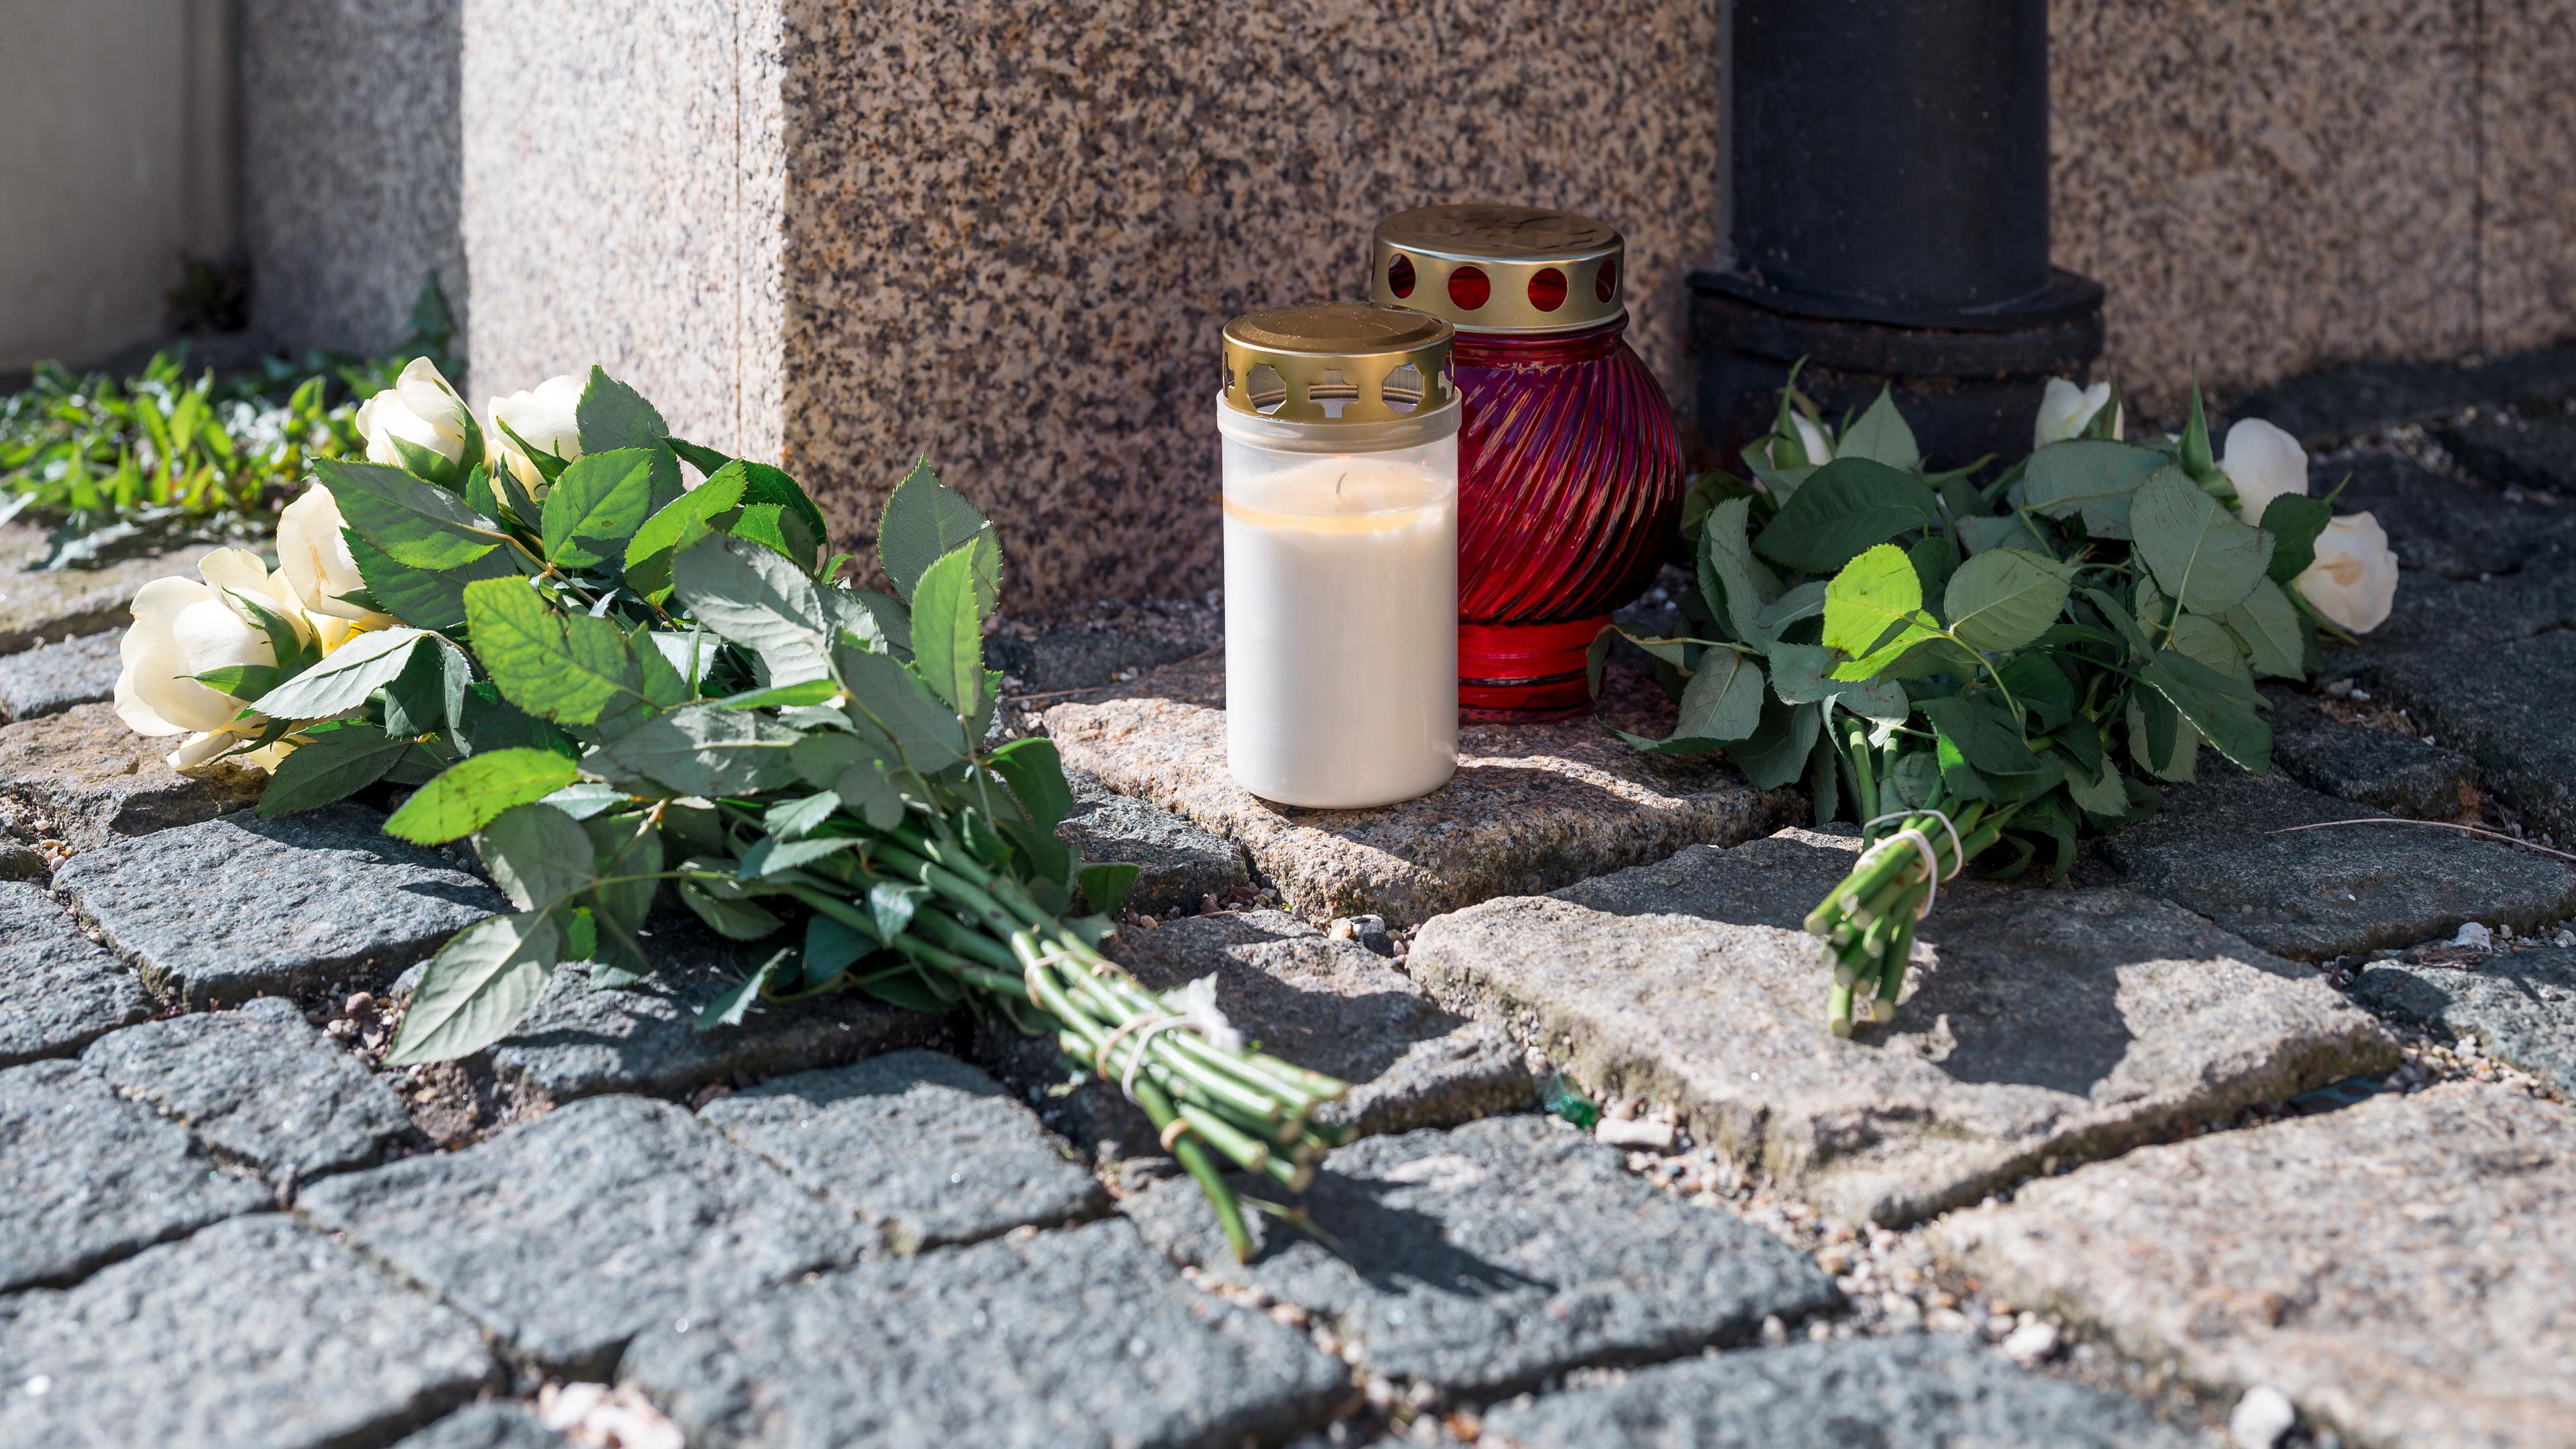 06.04.2023, Bayern, Wunsiedel: An der Straßenecke zur Zufahrtsstraße zum Kinder- und Jugendhilfezentrum, in dem eine Zehnjährige tot aufgefunden wurde, liegen Blumen und Grablichter auf dem Gehweg.